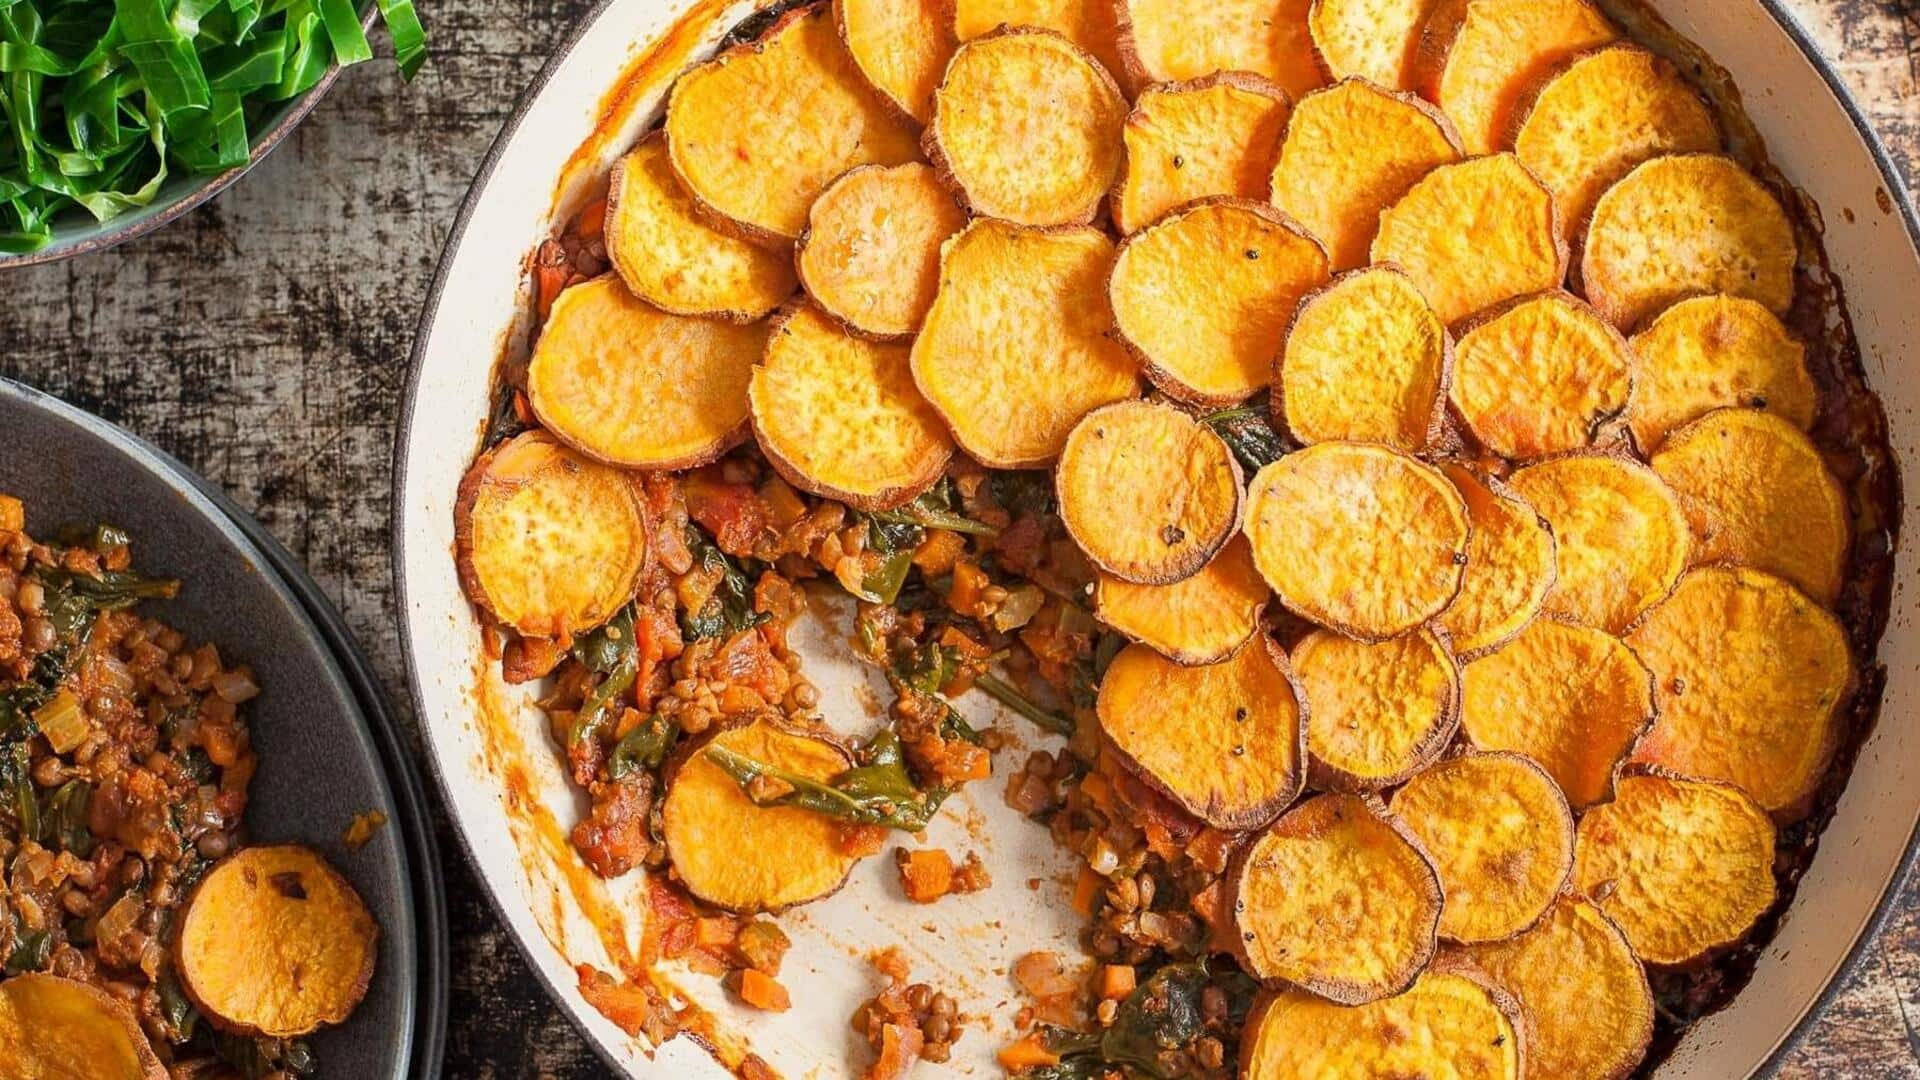 Sweden on your plate: Cook and savor lentil potato bake